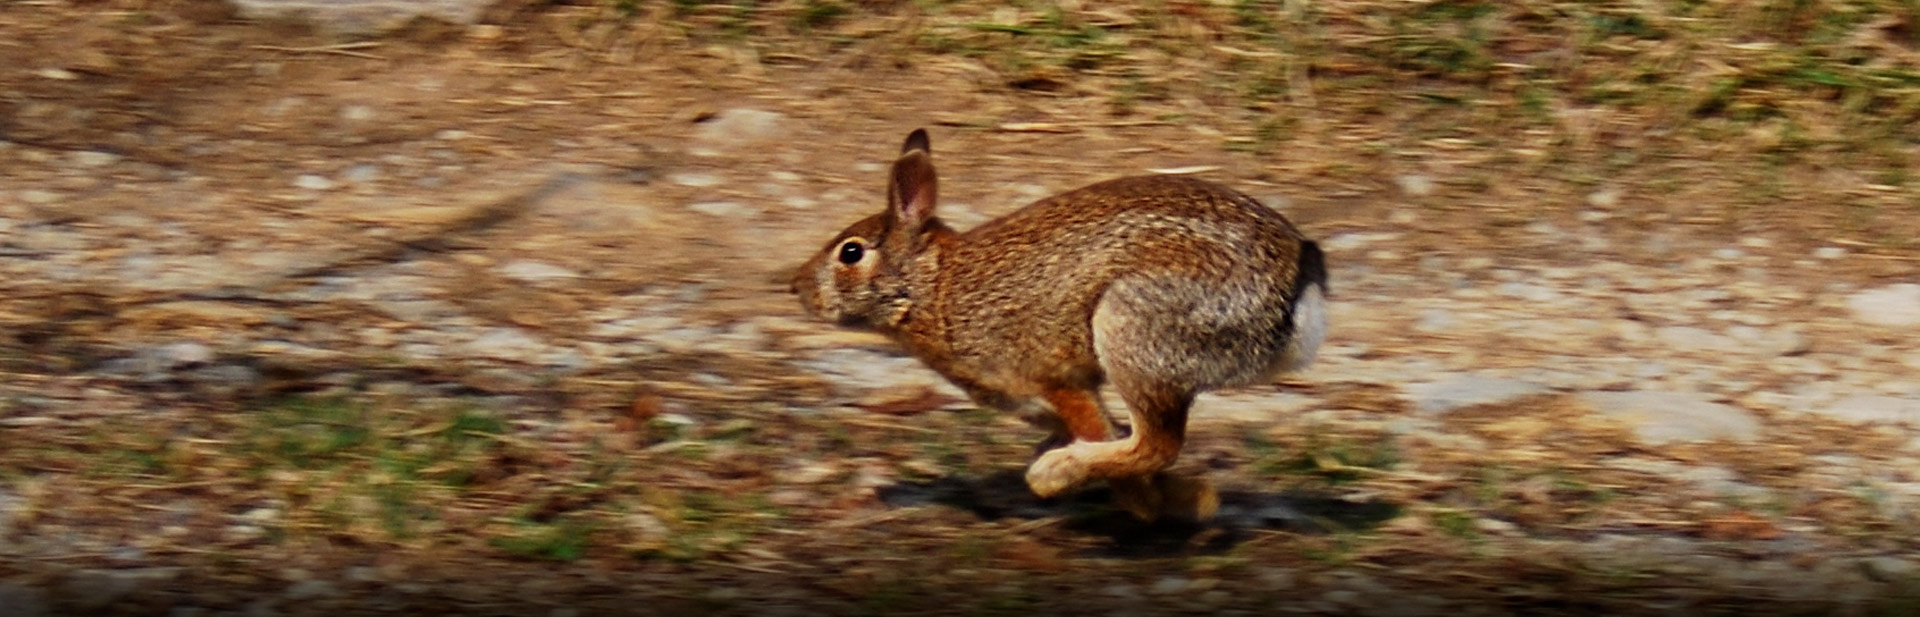 rabbit running